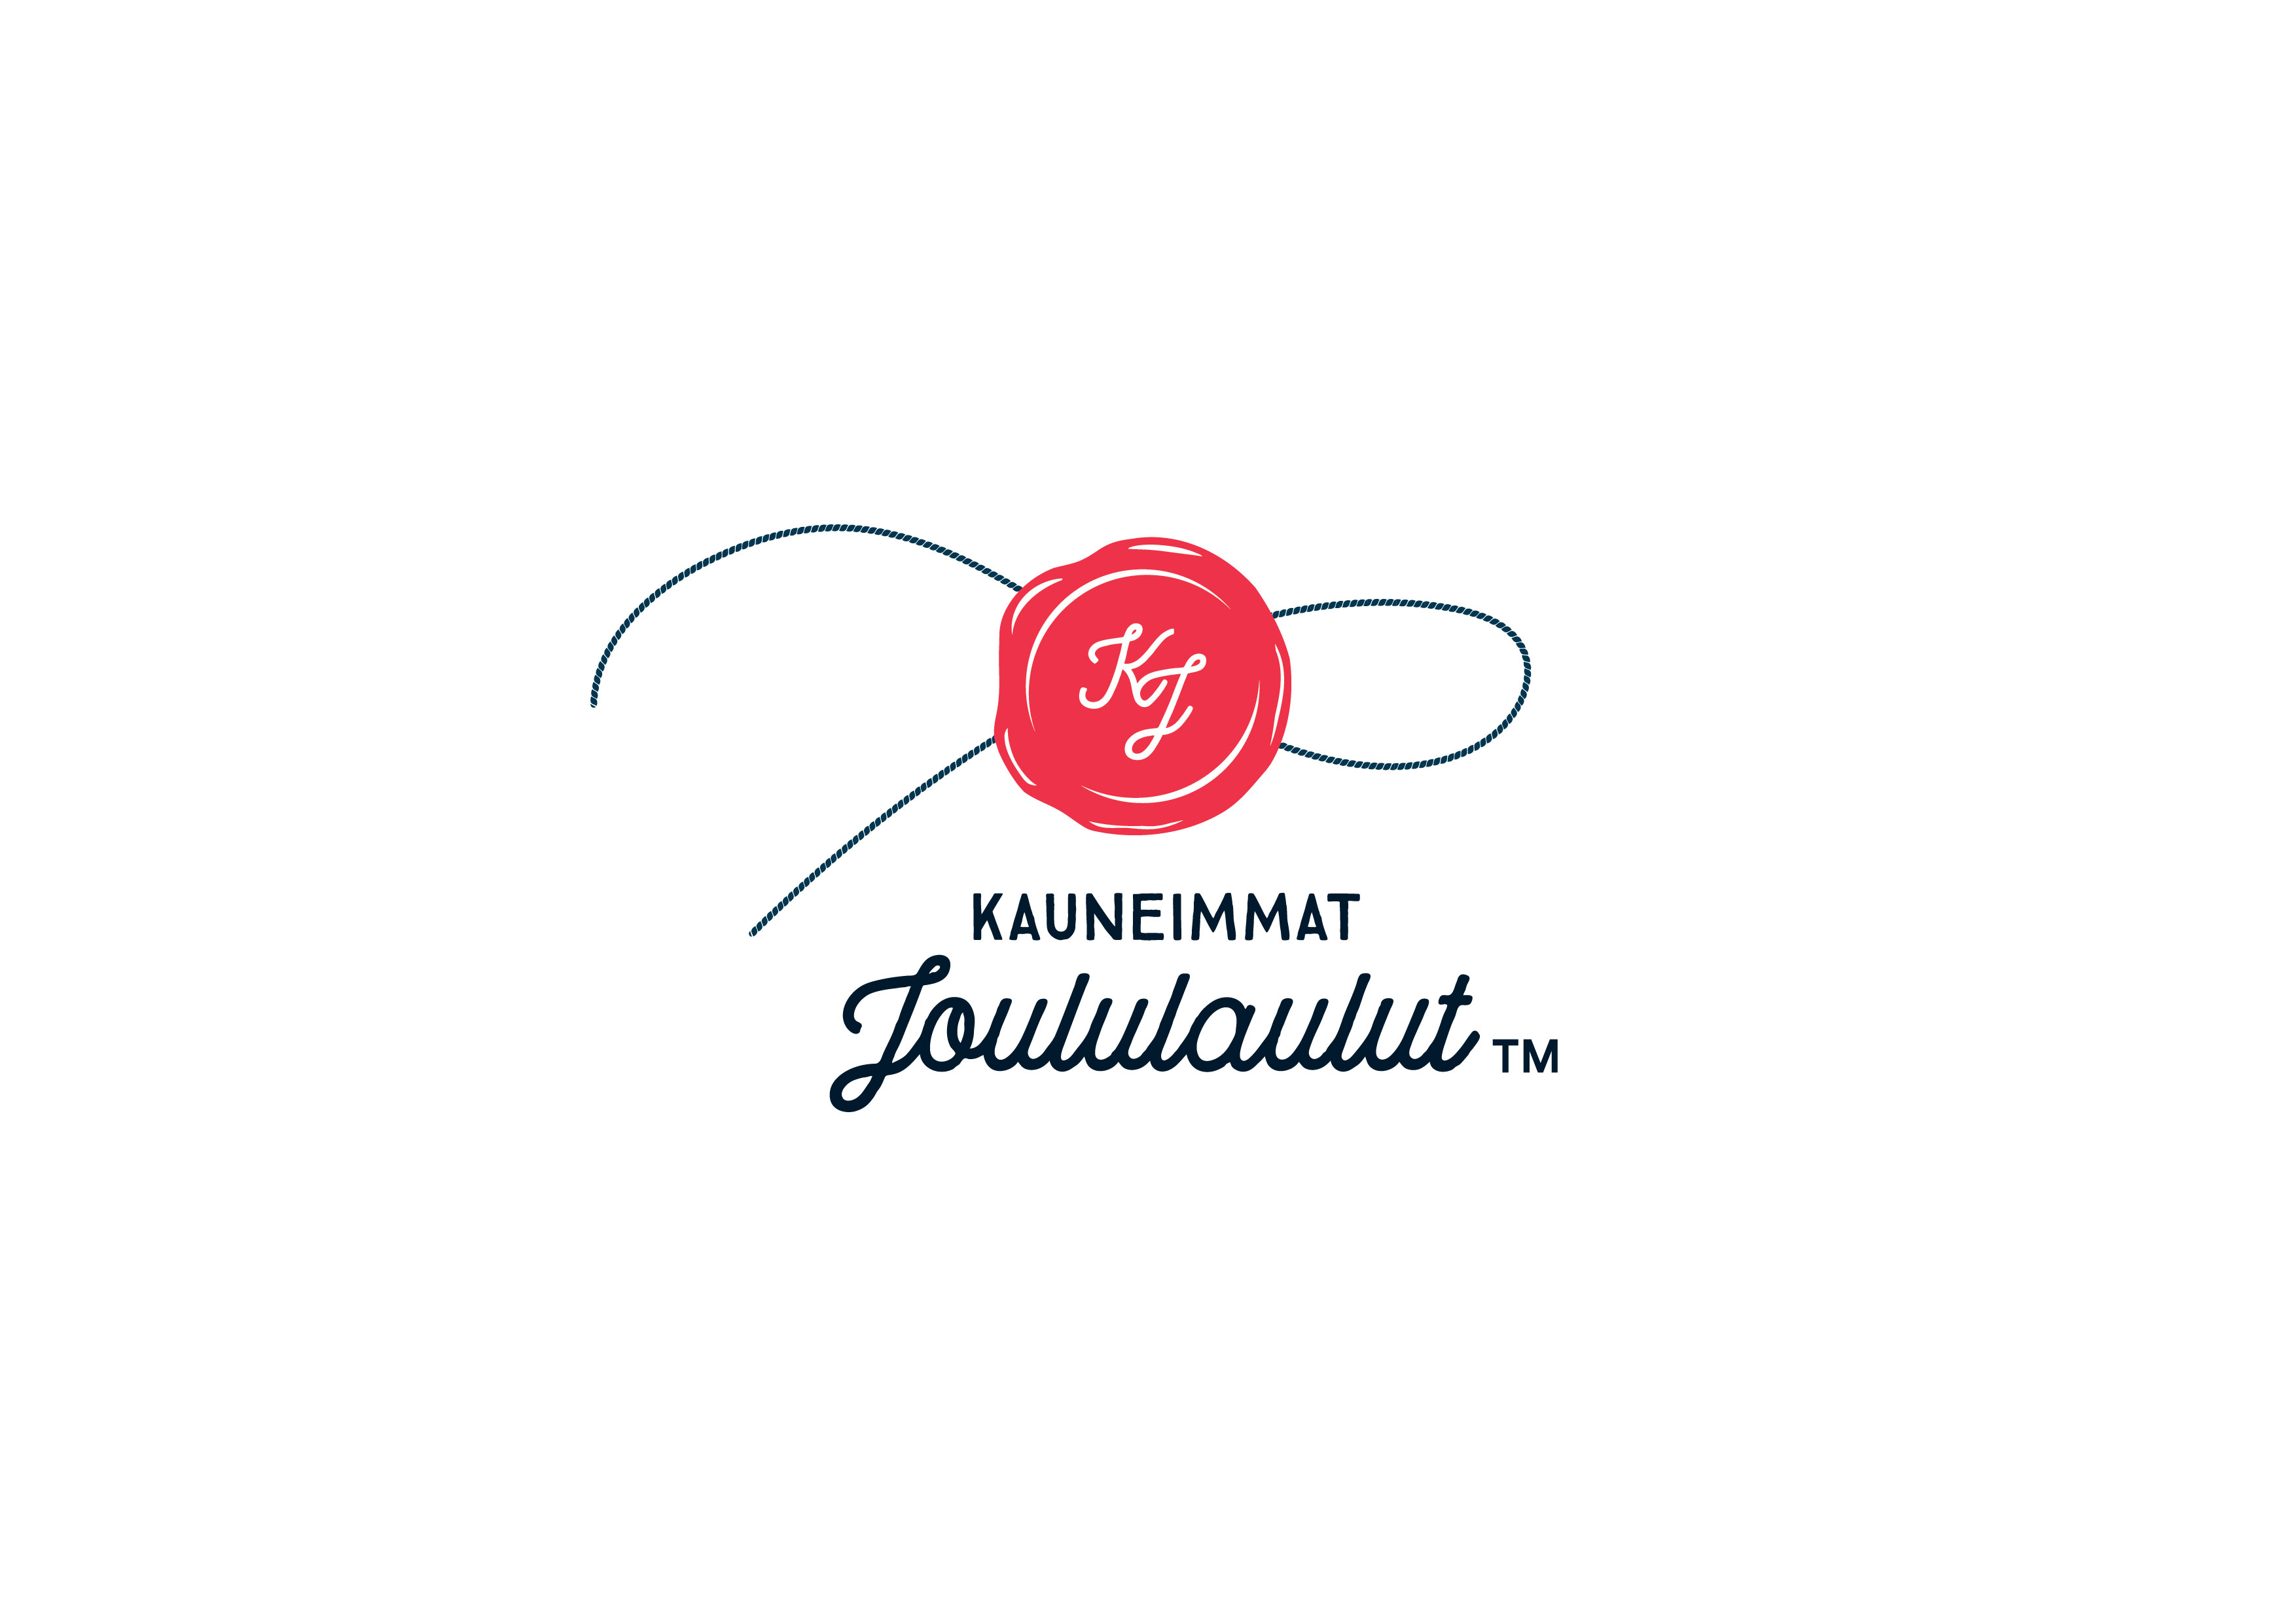 Kauneimmat Joululaulut -logo.